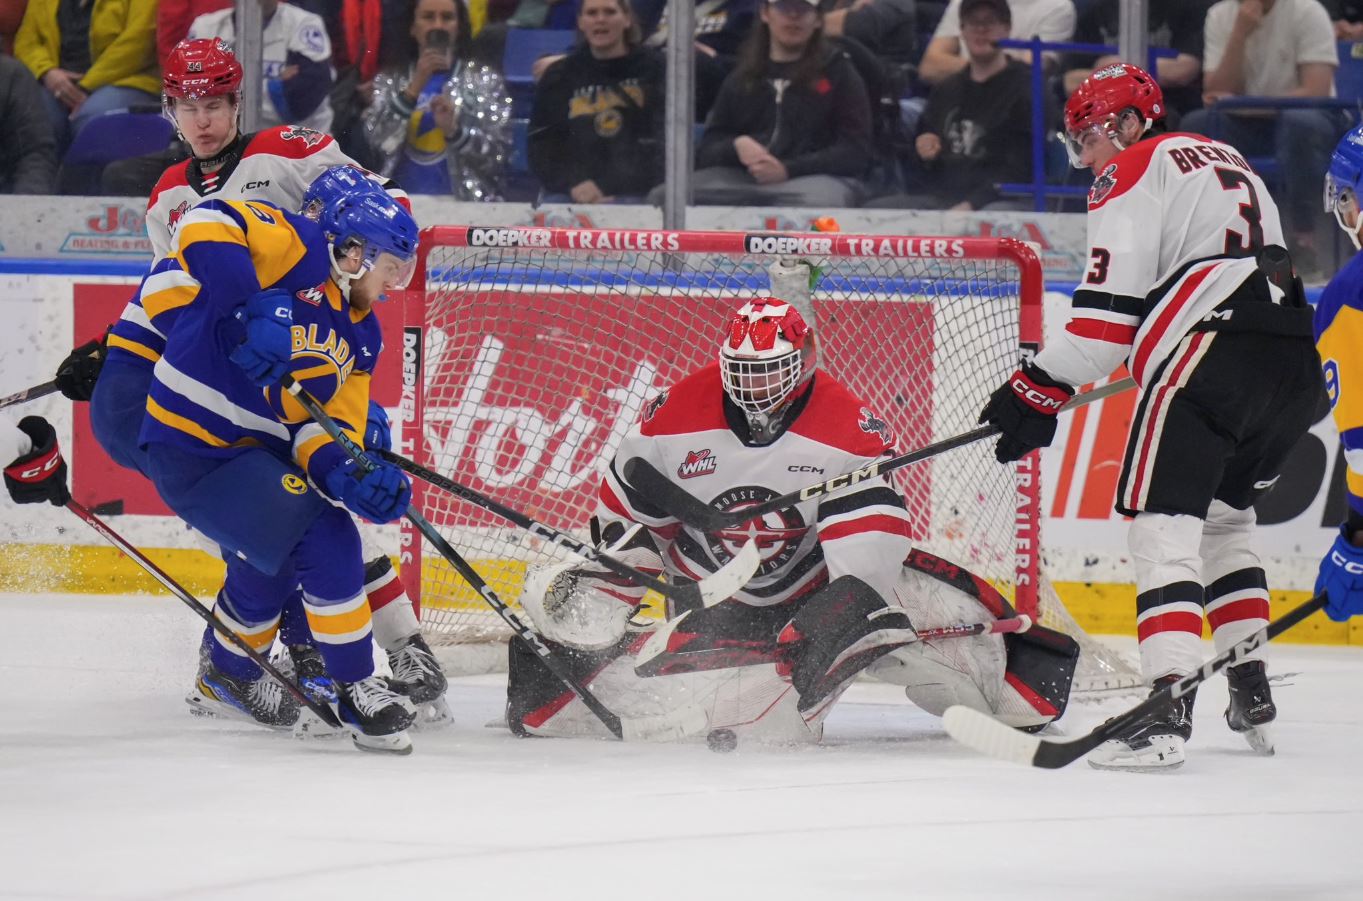 Saskatoon Blades heartbroken after playoff run ends Tuesday night